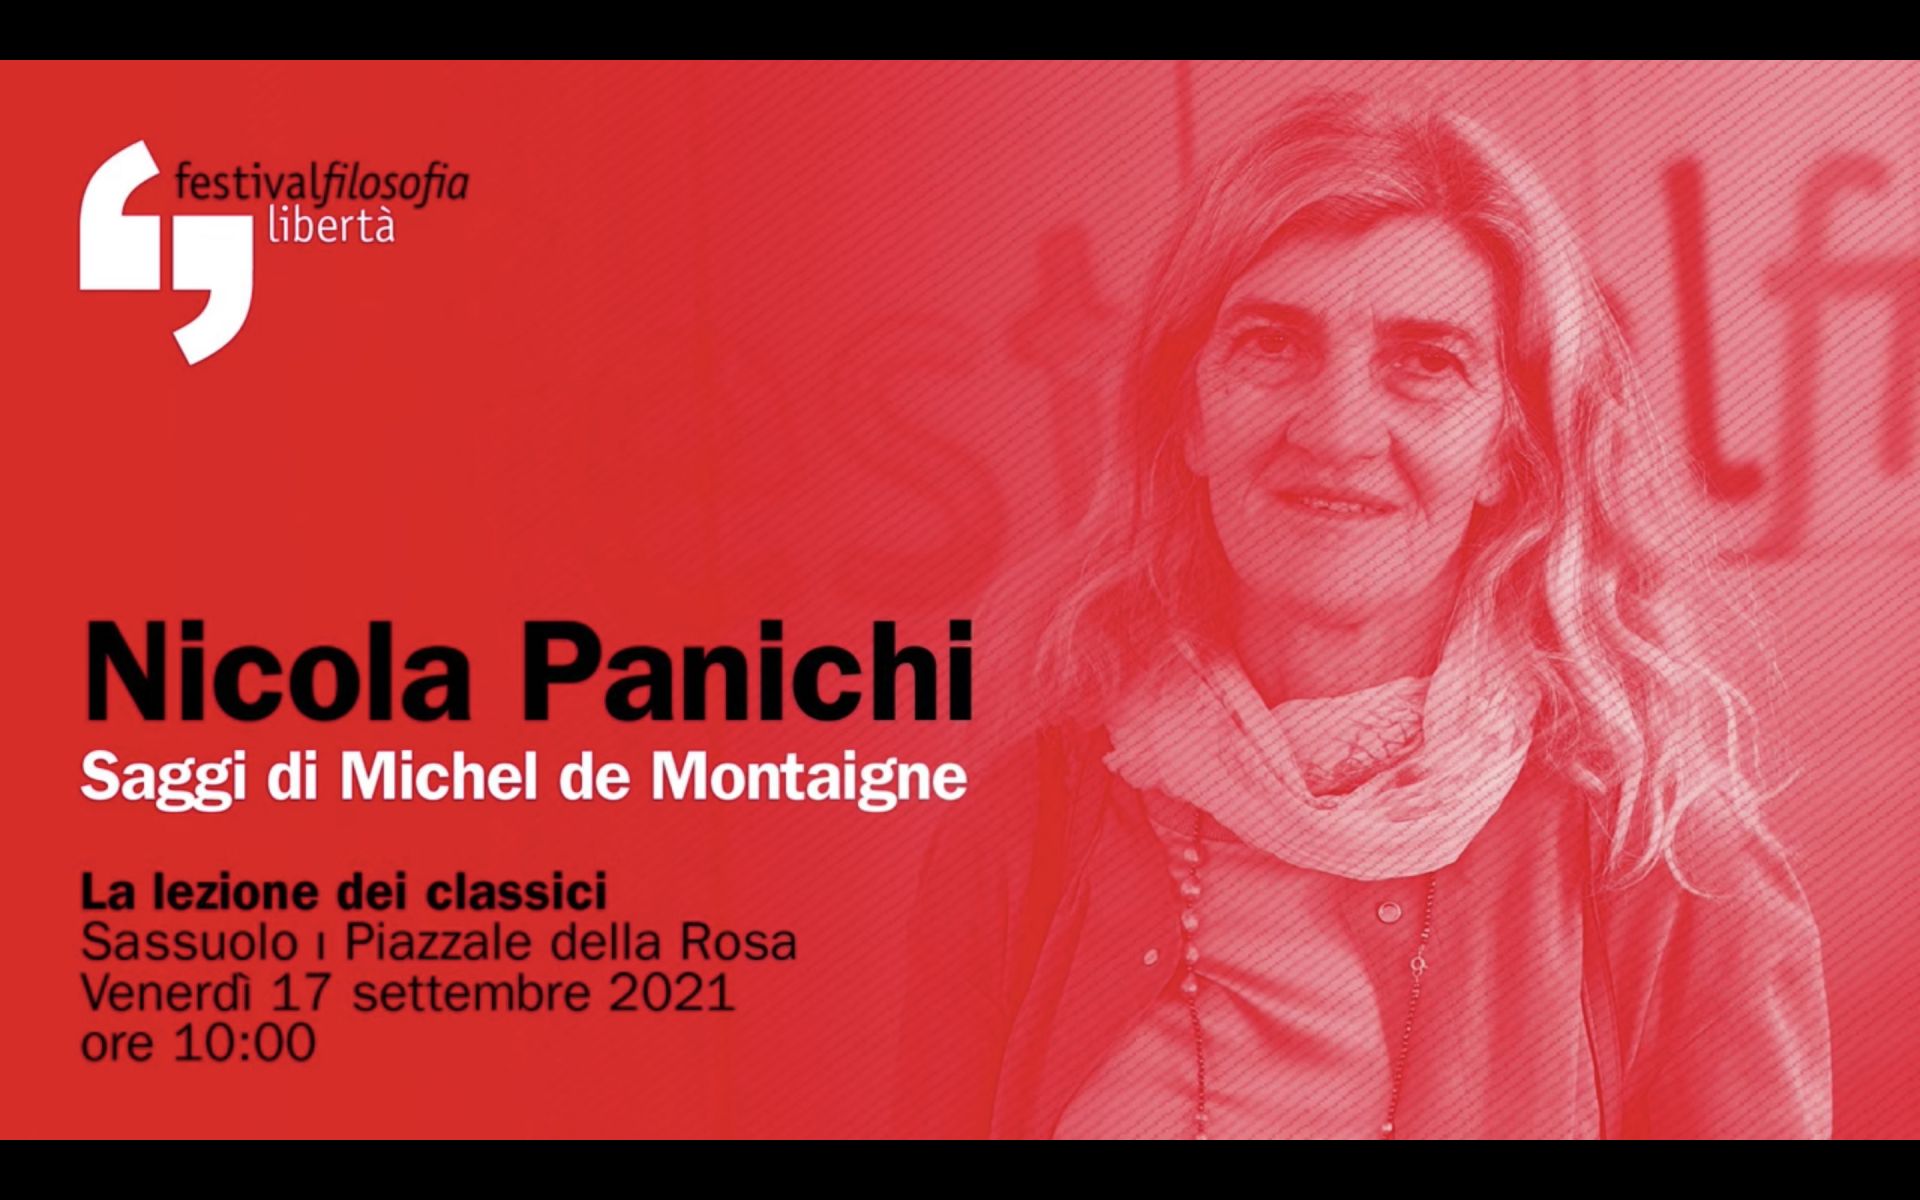 La socia Nicola Panichi partecipa al Festival della filosofia 2021